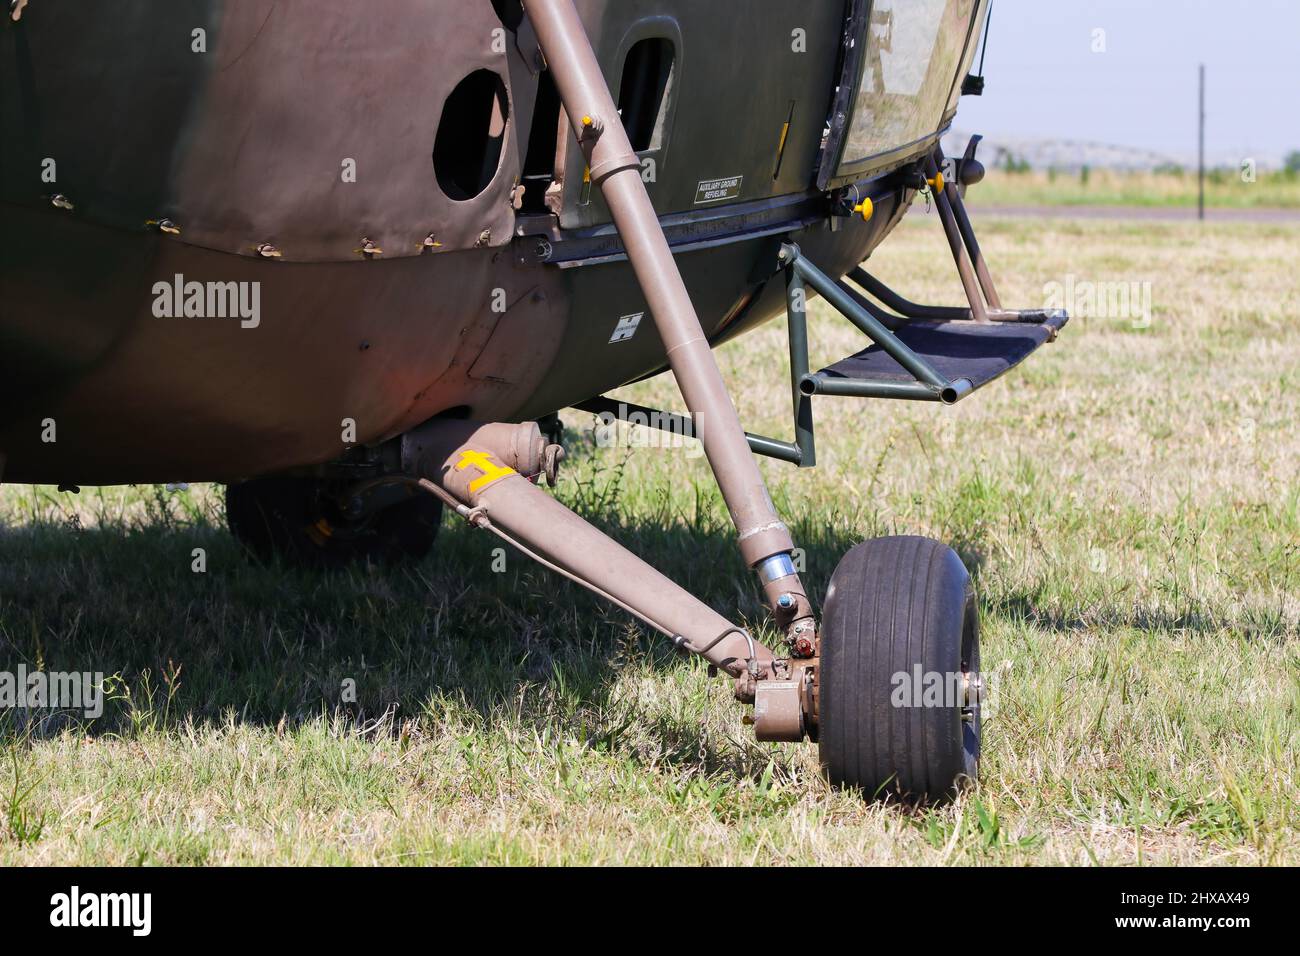 Gros plan sur le train d'atterrissage de l'hélicoptère Alouette III sur l'herbe Banque D'Images